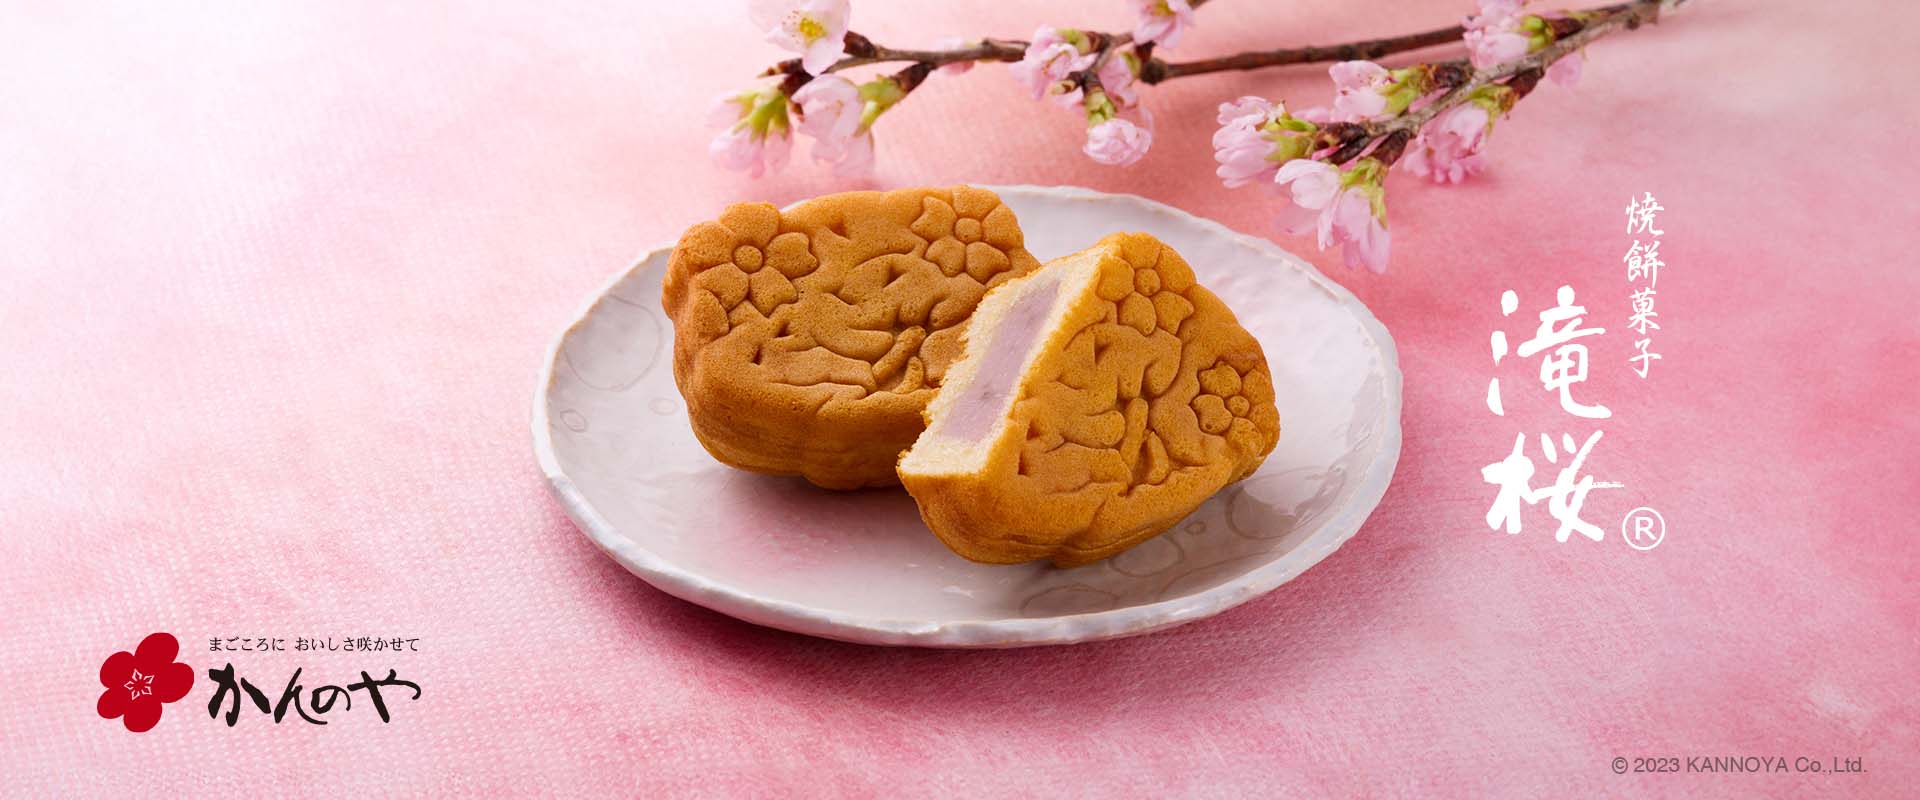 春限定焼餅菓子滝桜